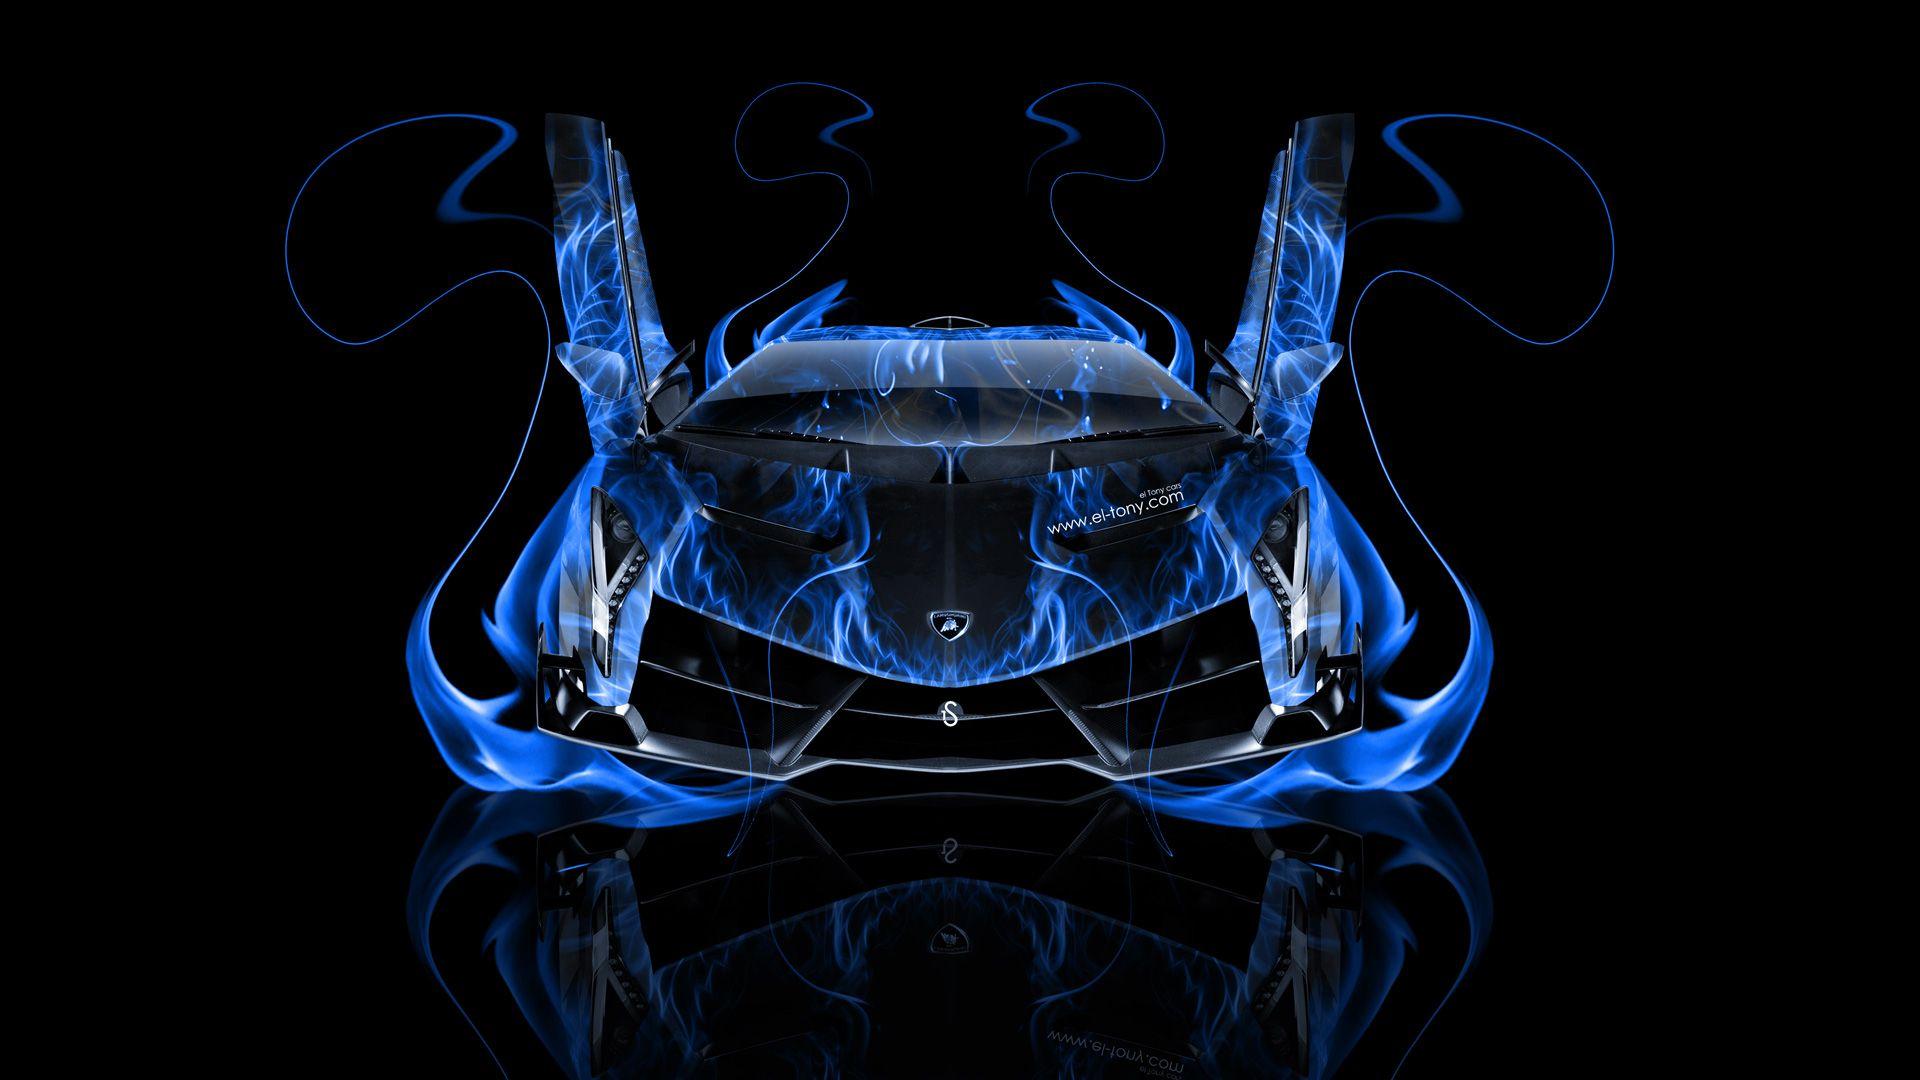 Blue Fire Lamborghini Wallpapers - Top Free Blue Fire Lamborghini